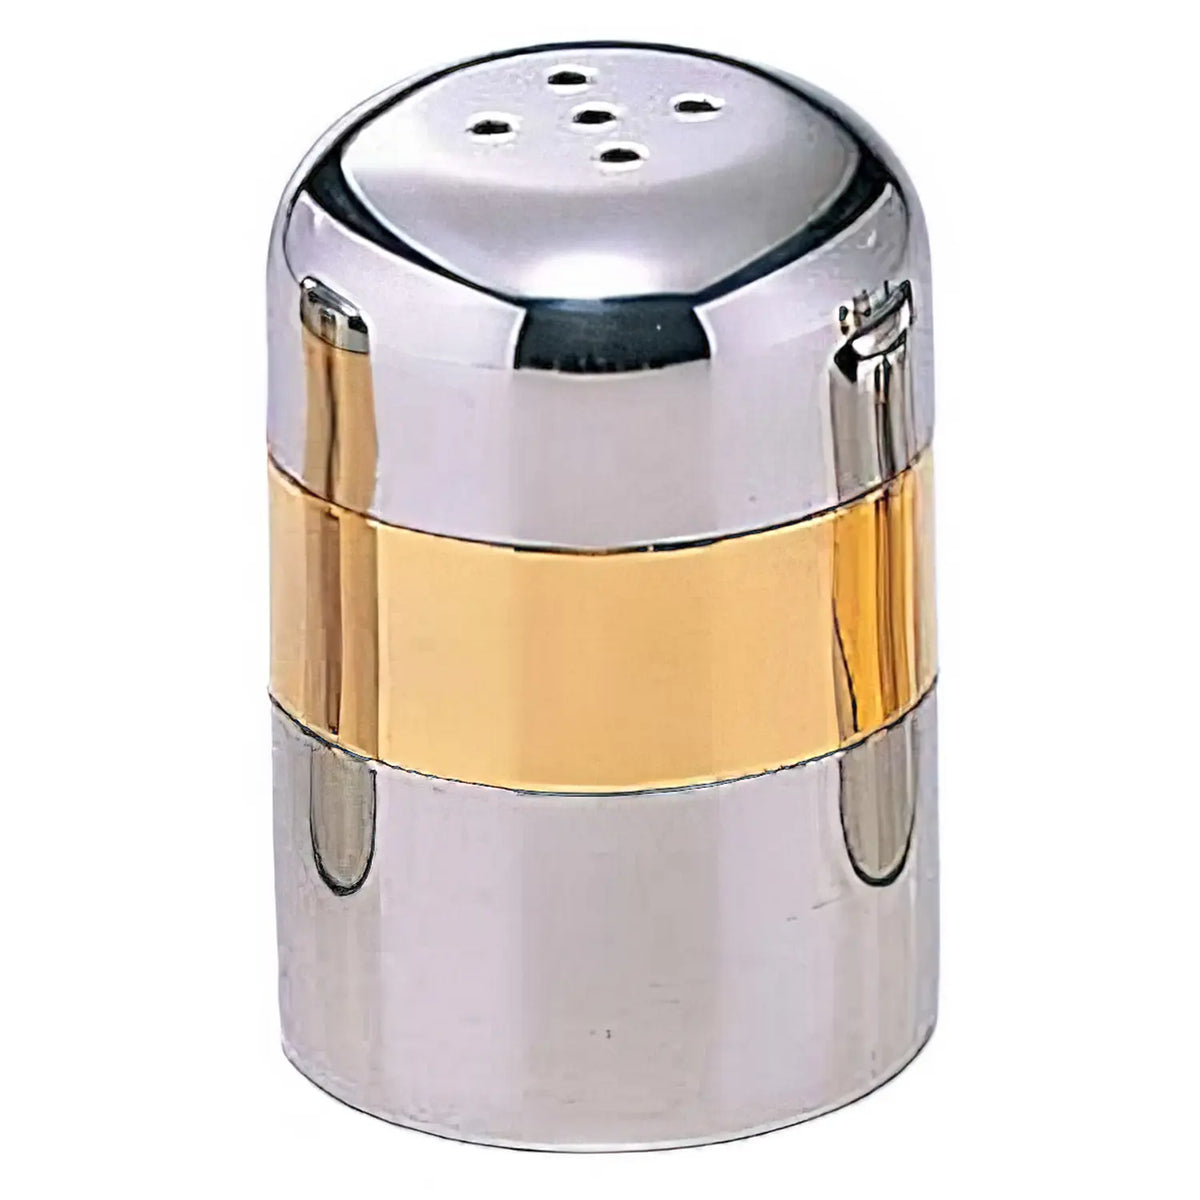 M-TAKA Metallic Stainless Steel Pepper Shaker